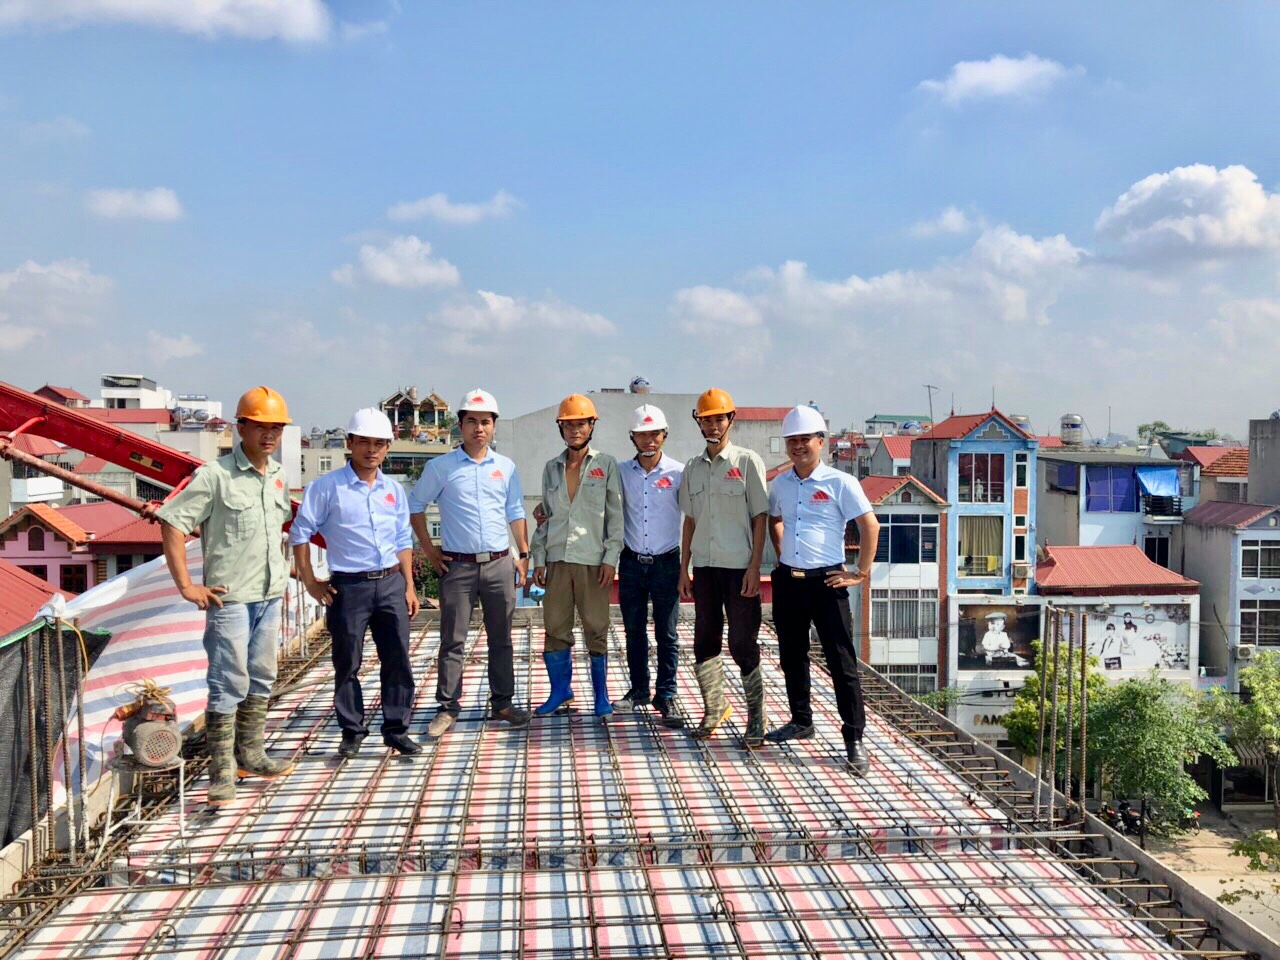 Dự án xây nhà trọn gói 4,5 tầng cho anh Sáng tại Hoài Đức, Hà Nội